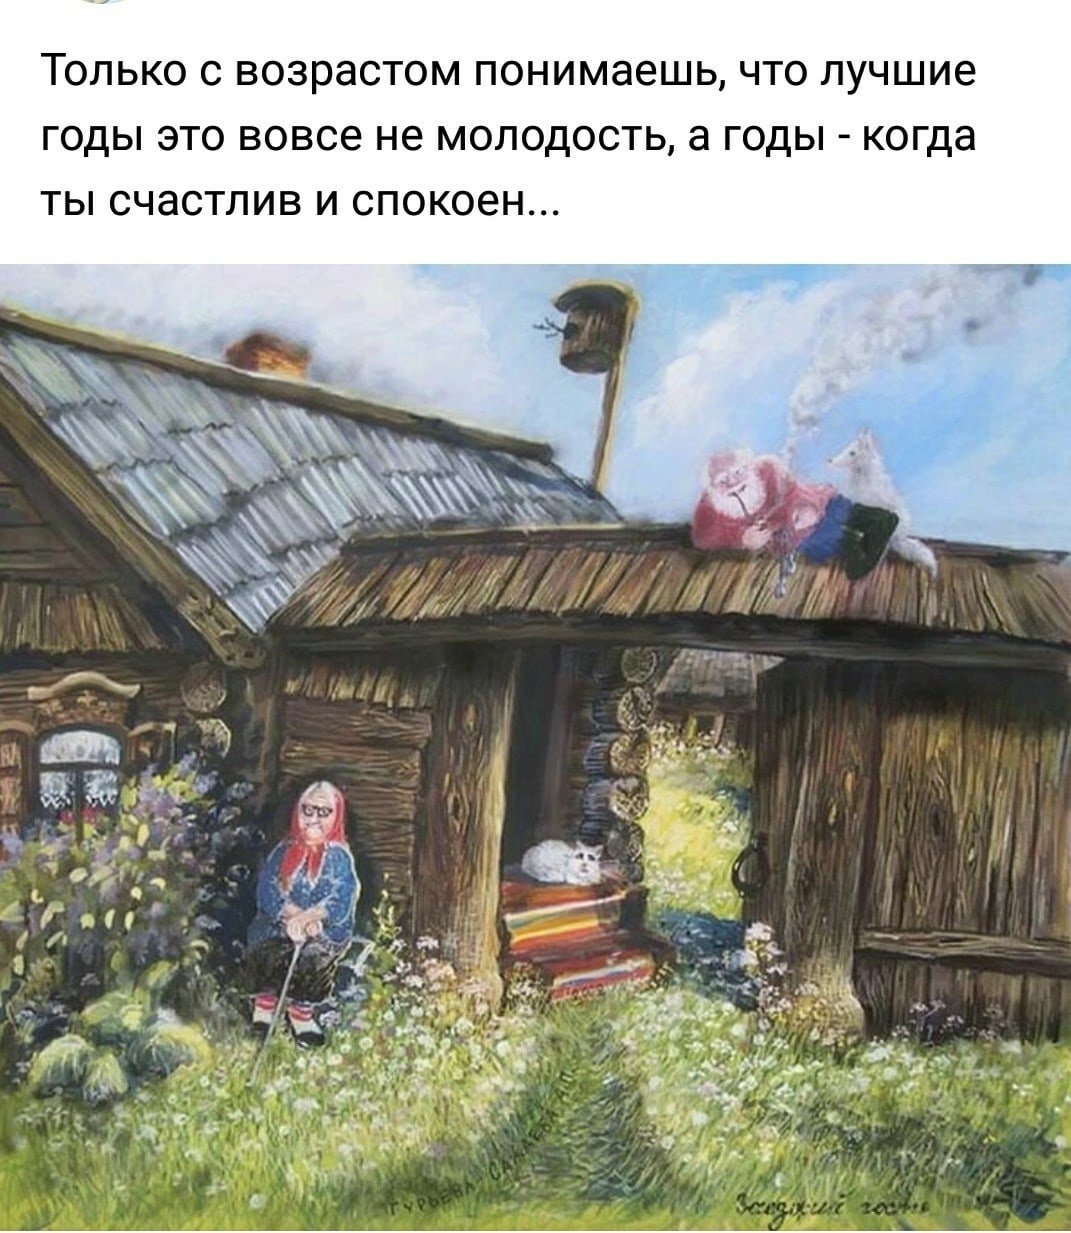 Что открыть в деревне. Художник а. Гурьева-Сажаева.